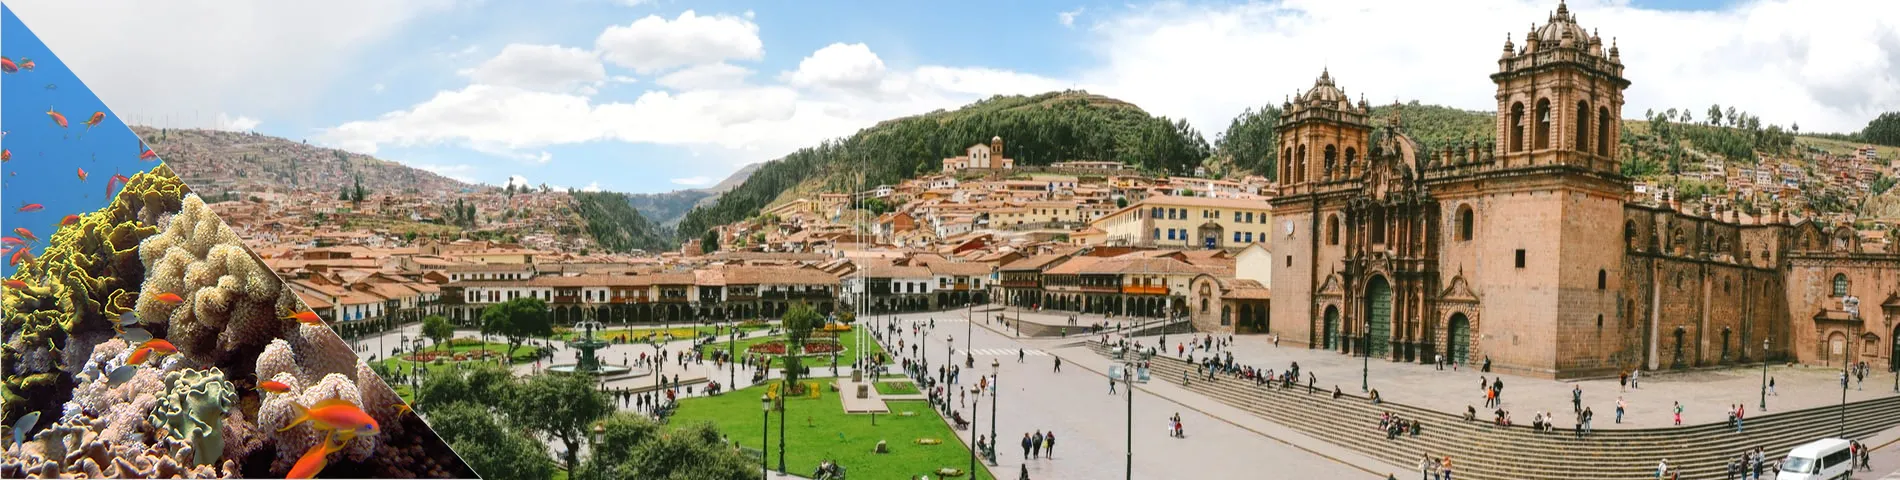 Cuzco - Espanhol & Mergulho